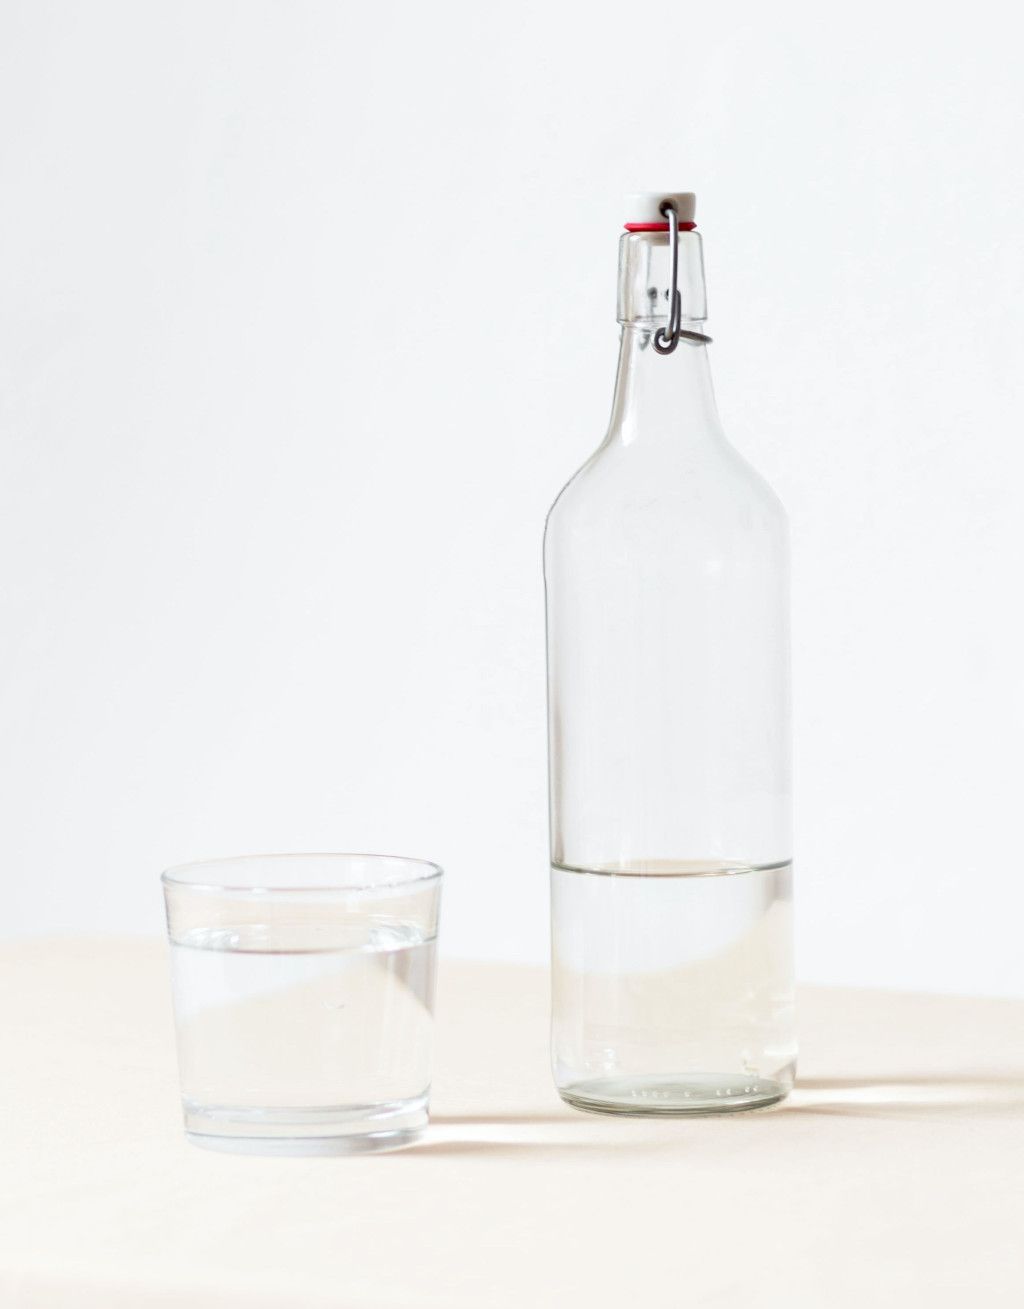 Das Bild zeigt eine Flasche und ein Trinkglas mit hochwertigem Wasser als Sinnbild für die Bedeutung vom Trinken auf deinem Abnehm-Weg